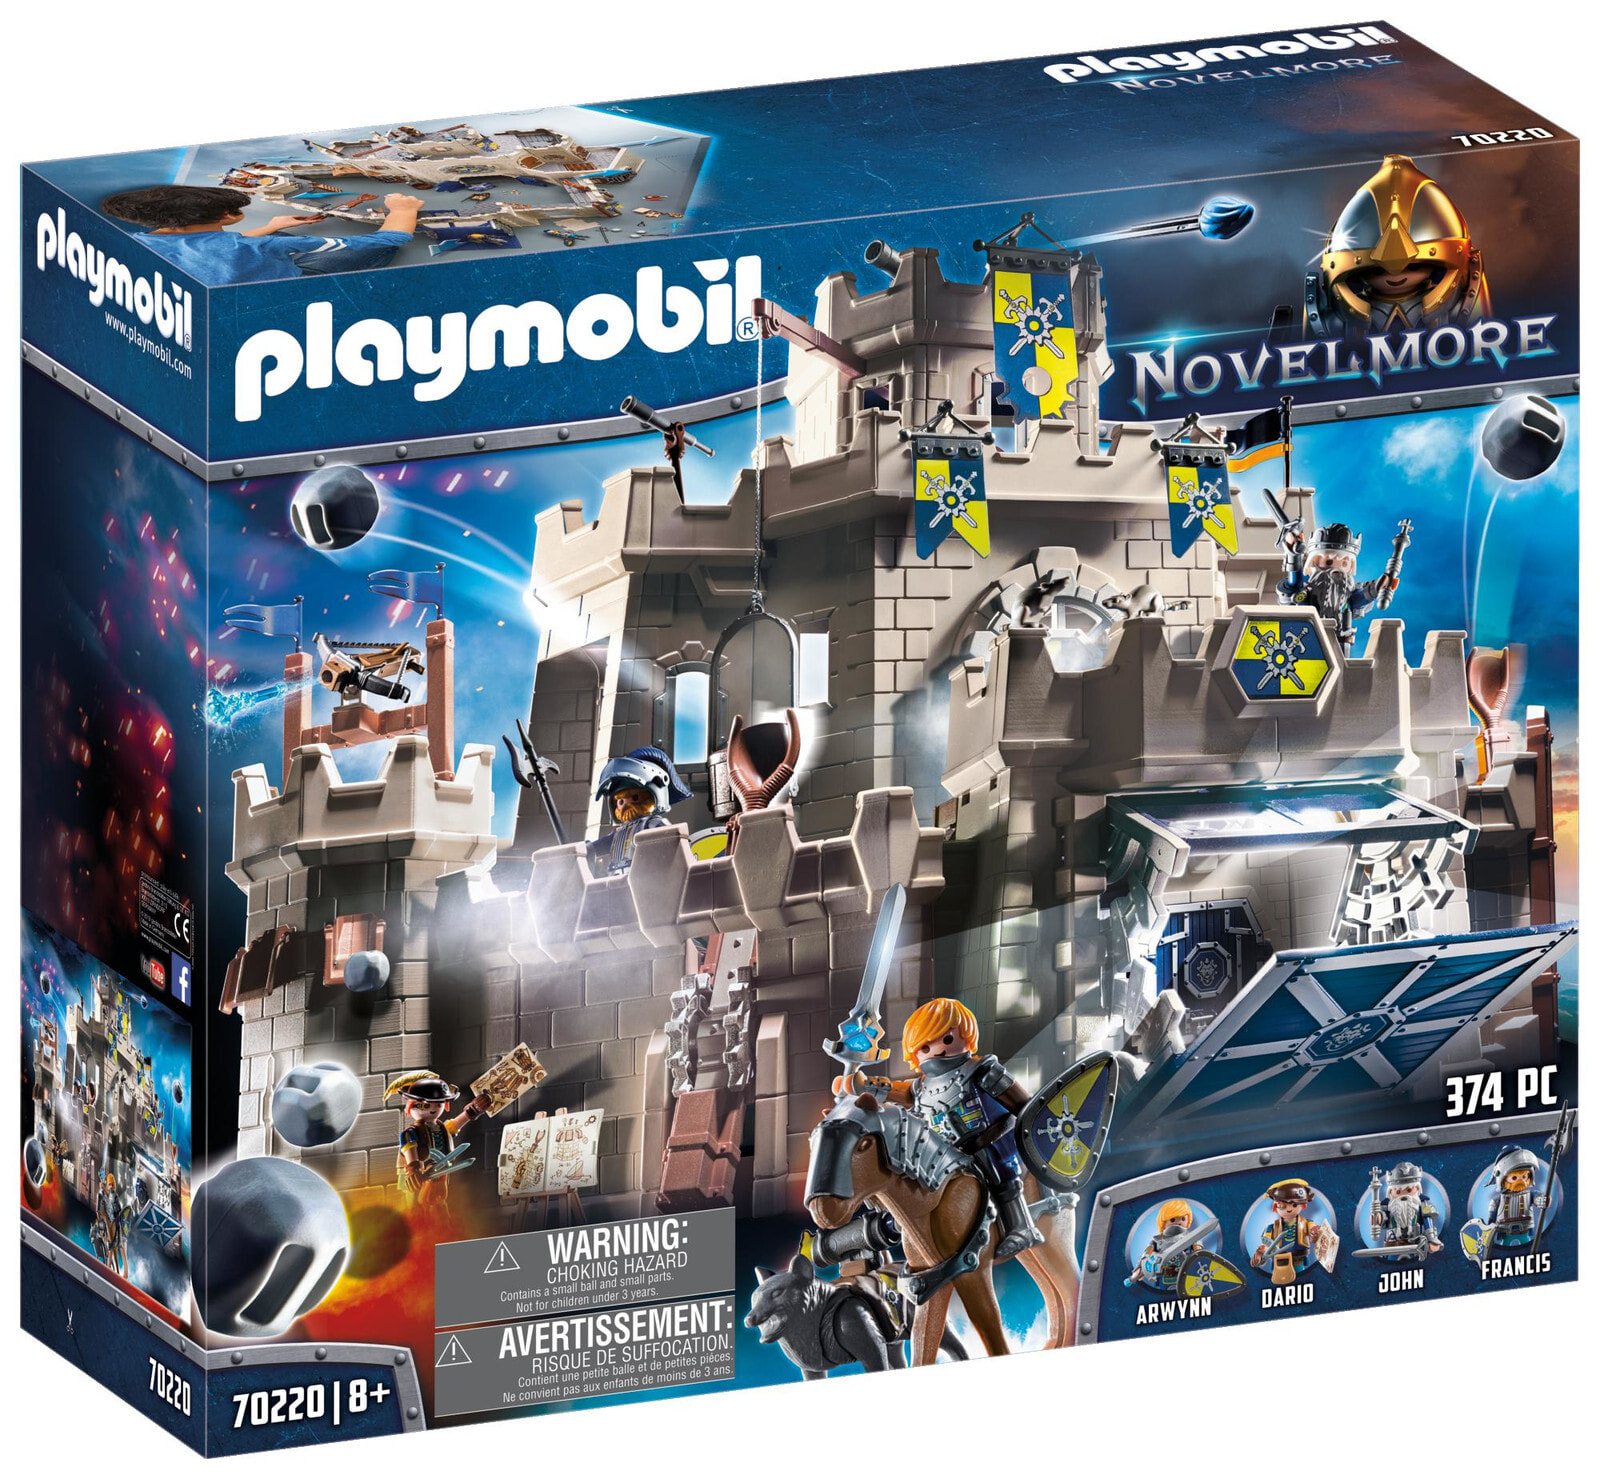 Конструктор Playmobil Novelmore 70220 Большой замок Новельмор